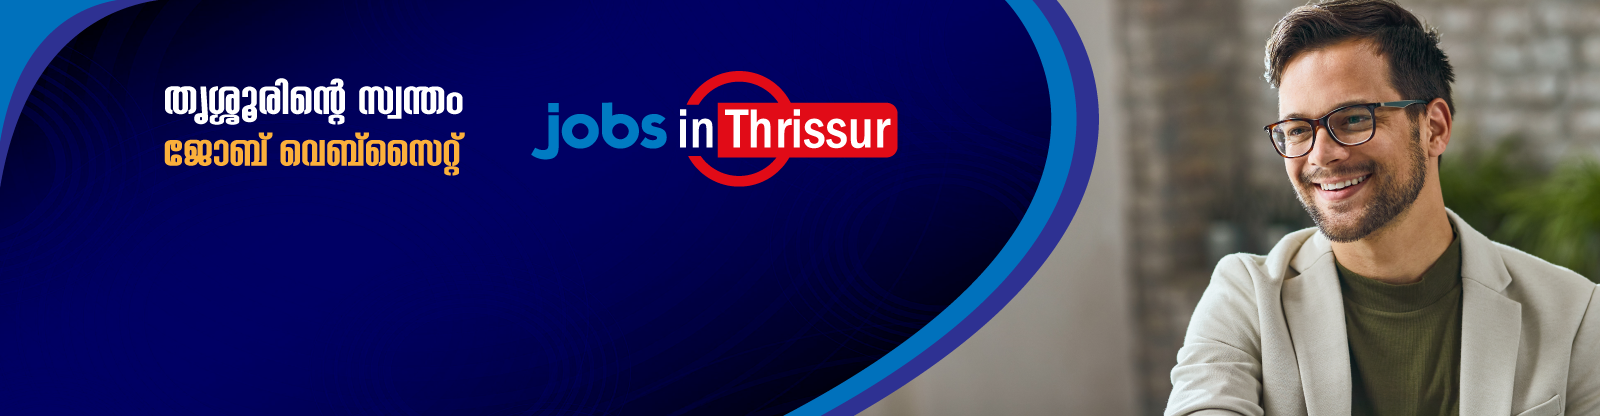 Jobs in Thrissur